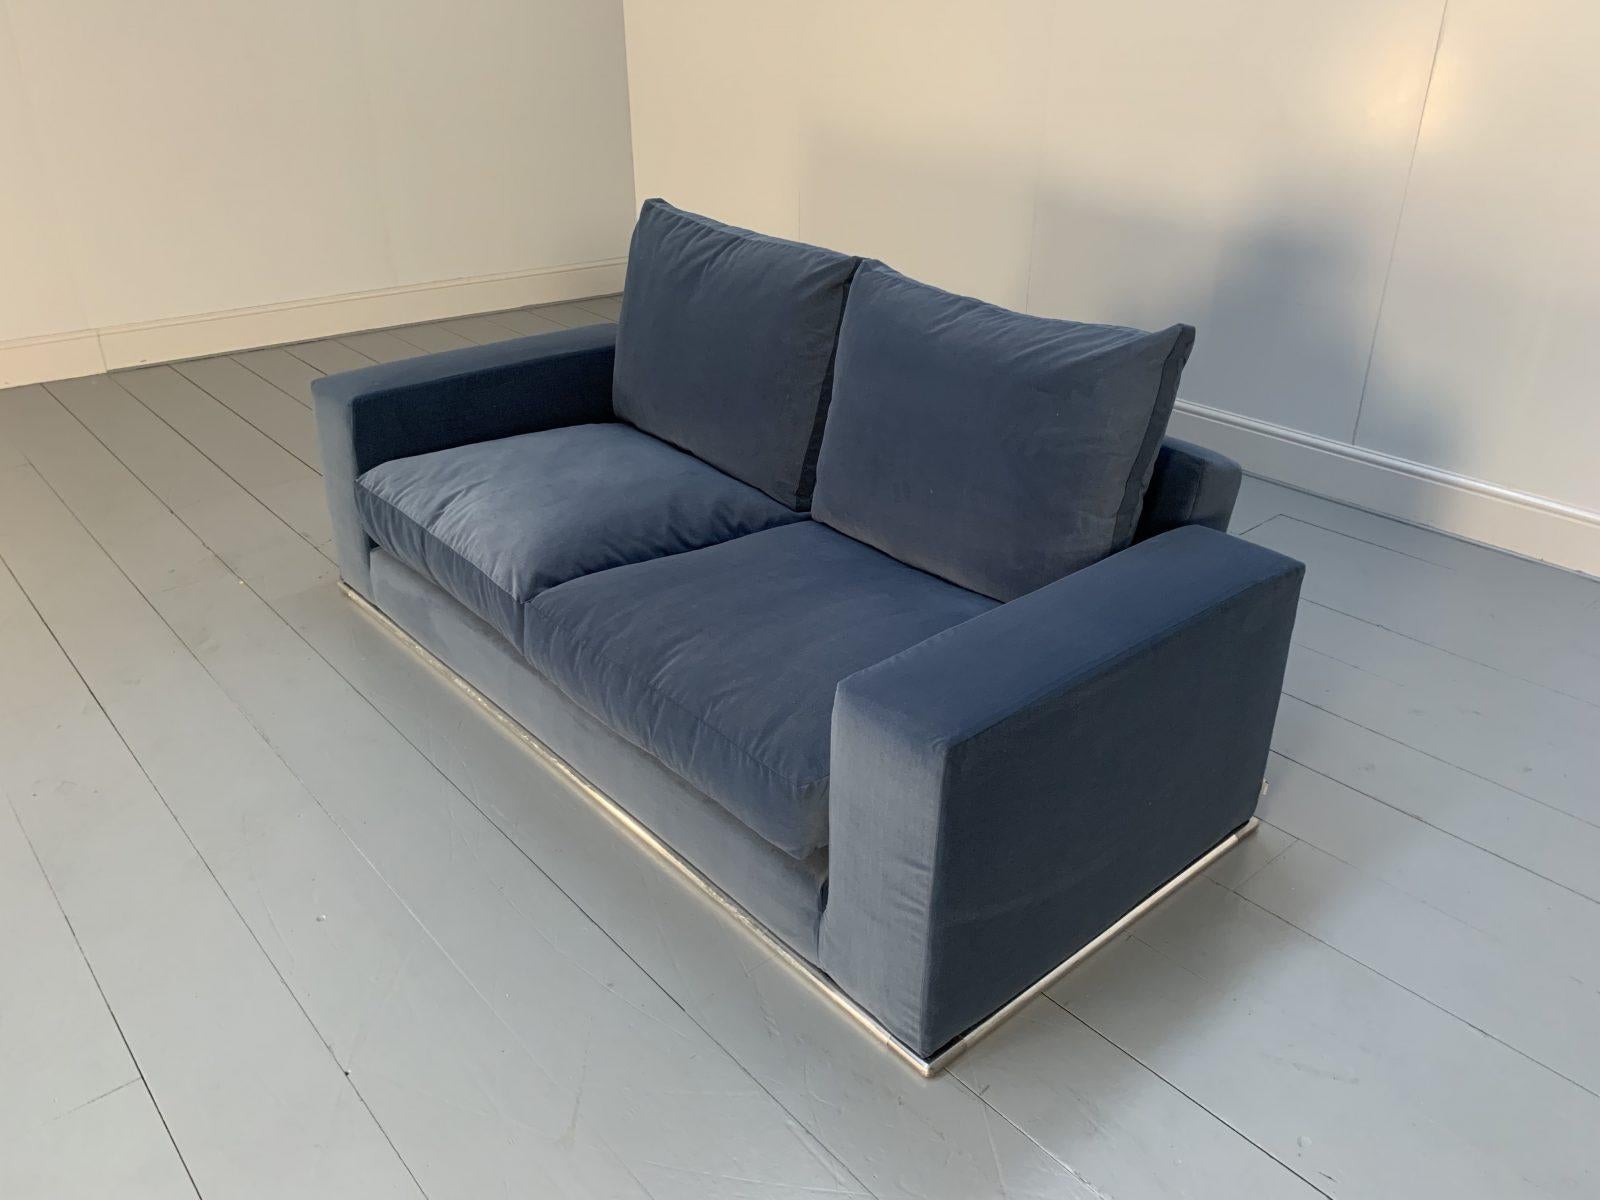 B&B Italia “Marcel” 2.5-Seat Sofa in Blue Velvet For Sale 4